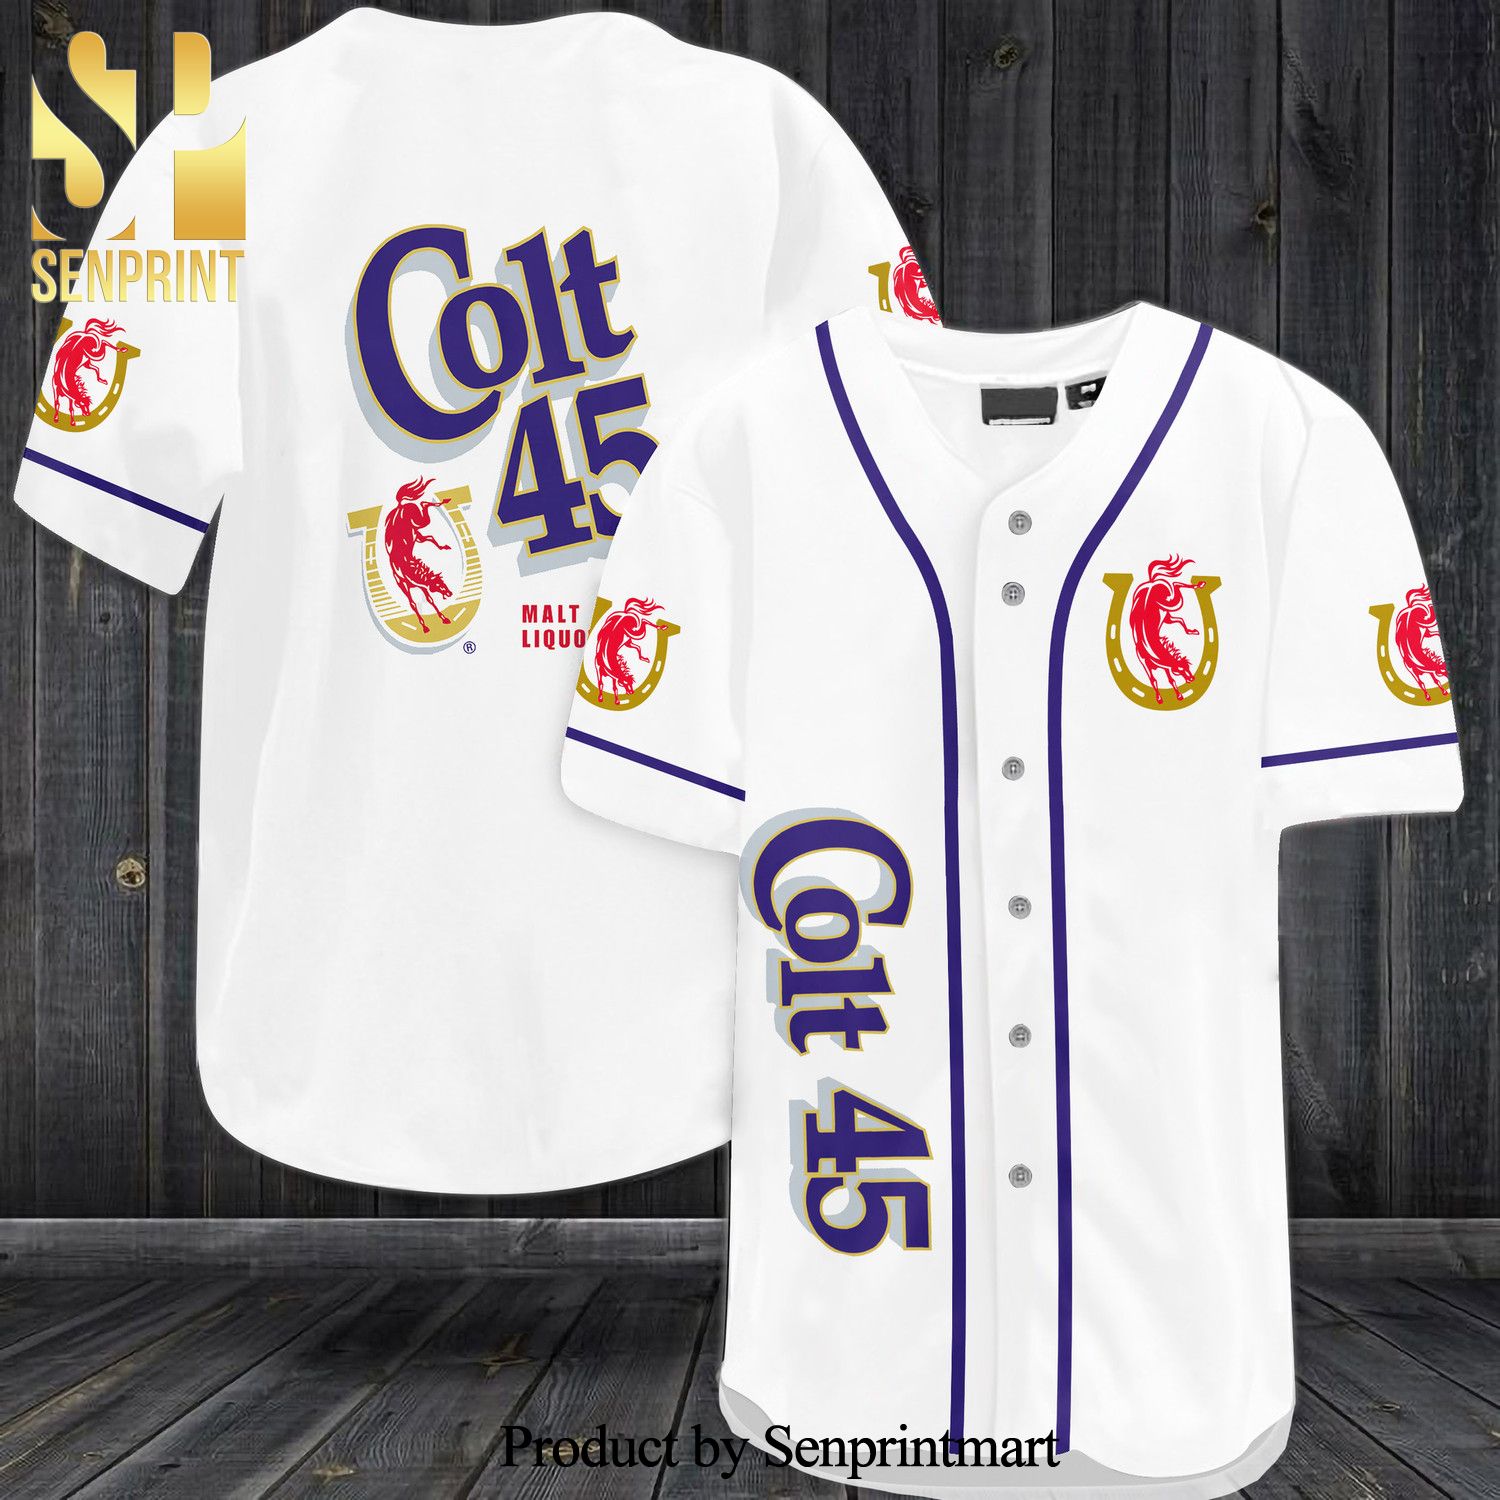 Colt 45 Malt Liquor All Over Print Baseball Jersey – White